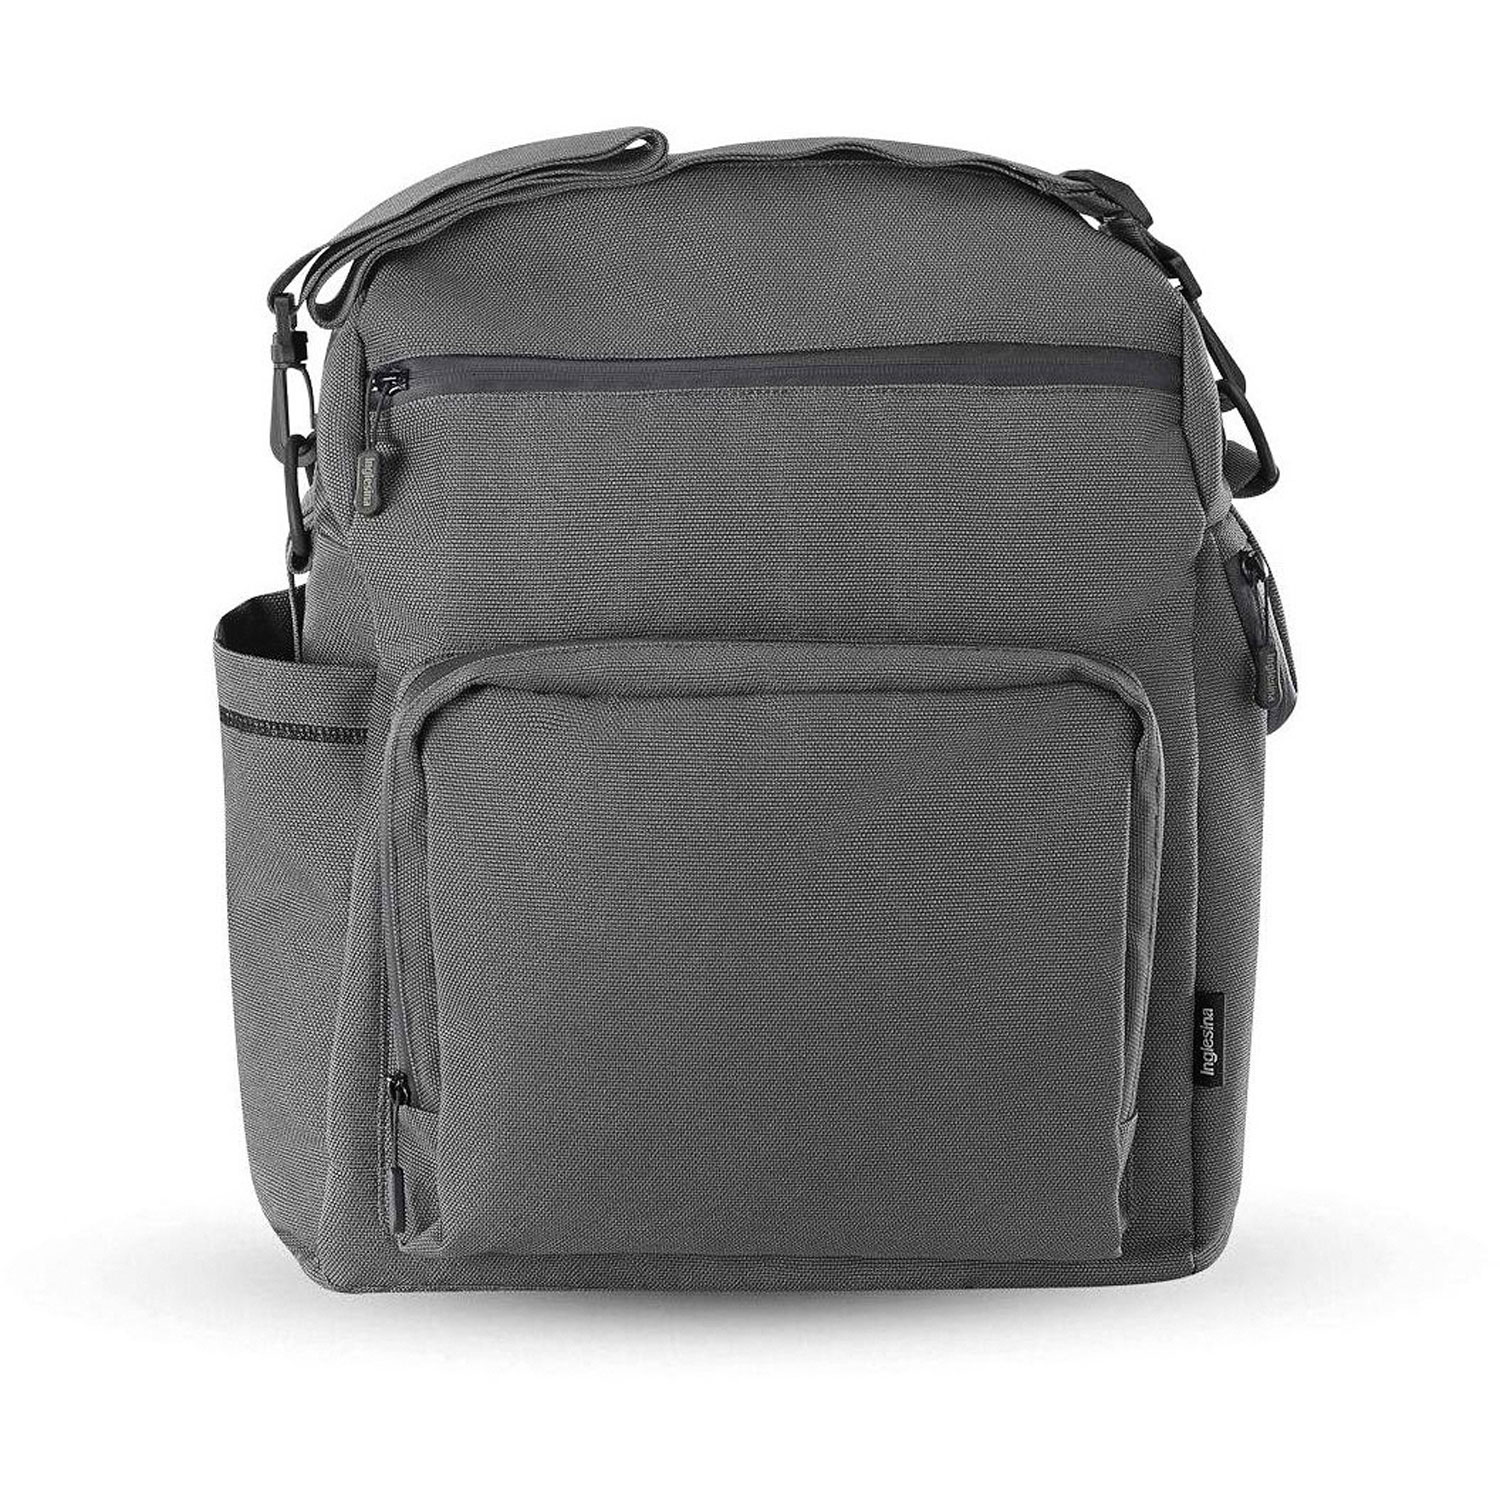 Сумка-рюкзак для коляски ADVENTURE BAG, цвет CHARCOAL GREY (2021) Inglesina сумка рюкзак для коляски adventure bag sequoia green inglesina